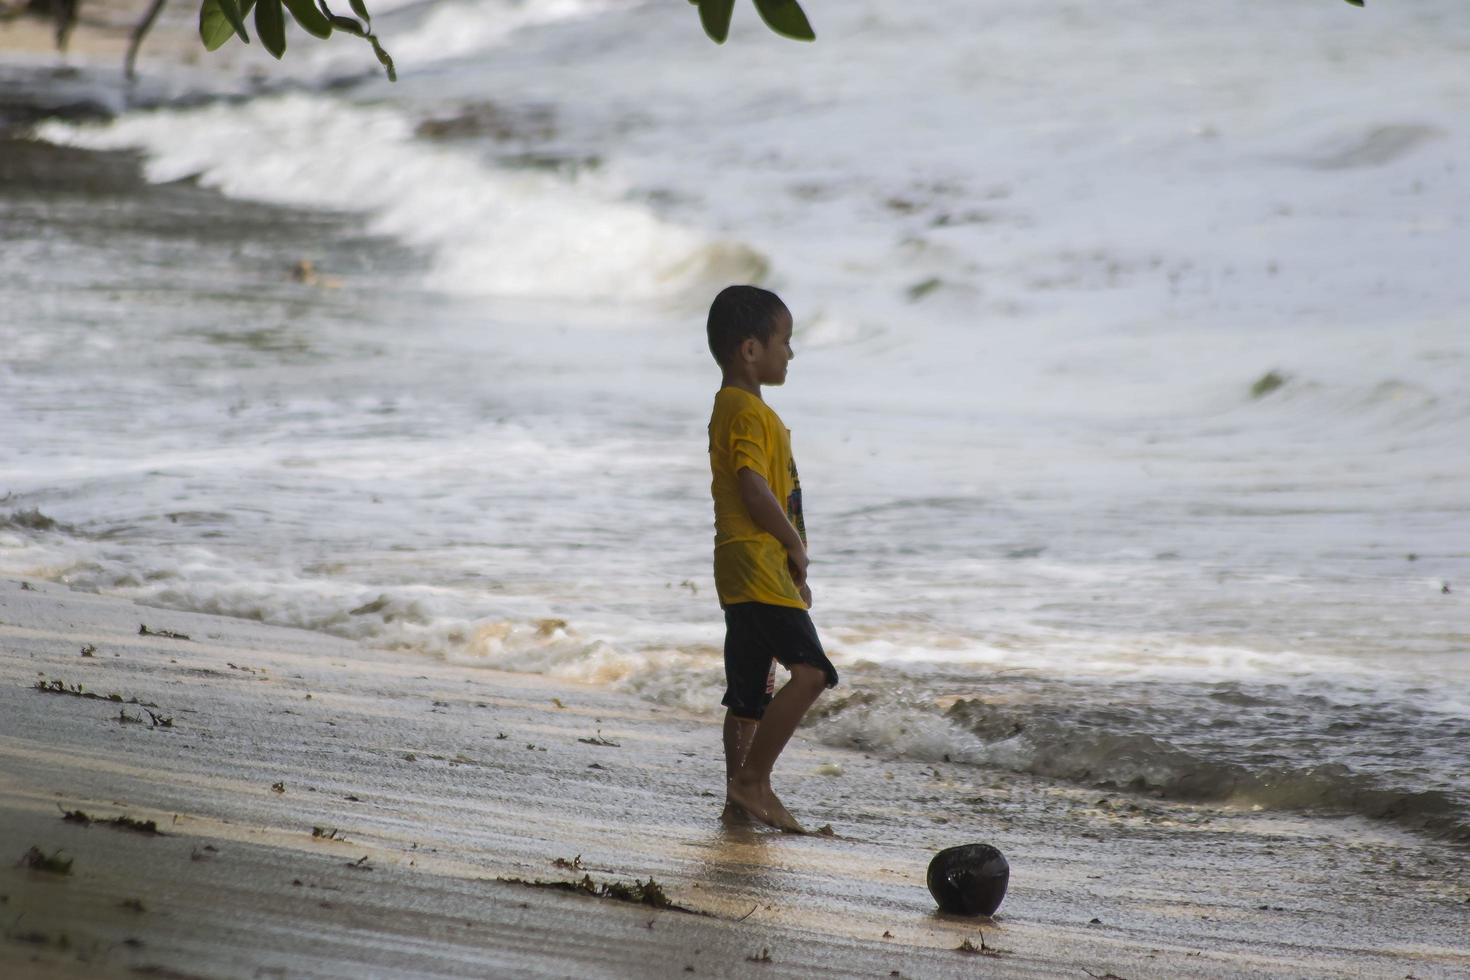 sorong, west papua, indonesië, 12 december 2021. jongens spelen tegen de golven op het strand foto